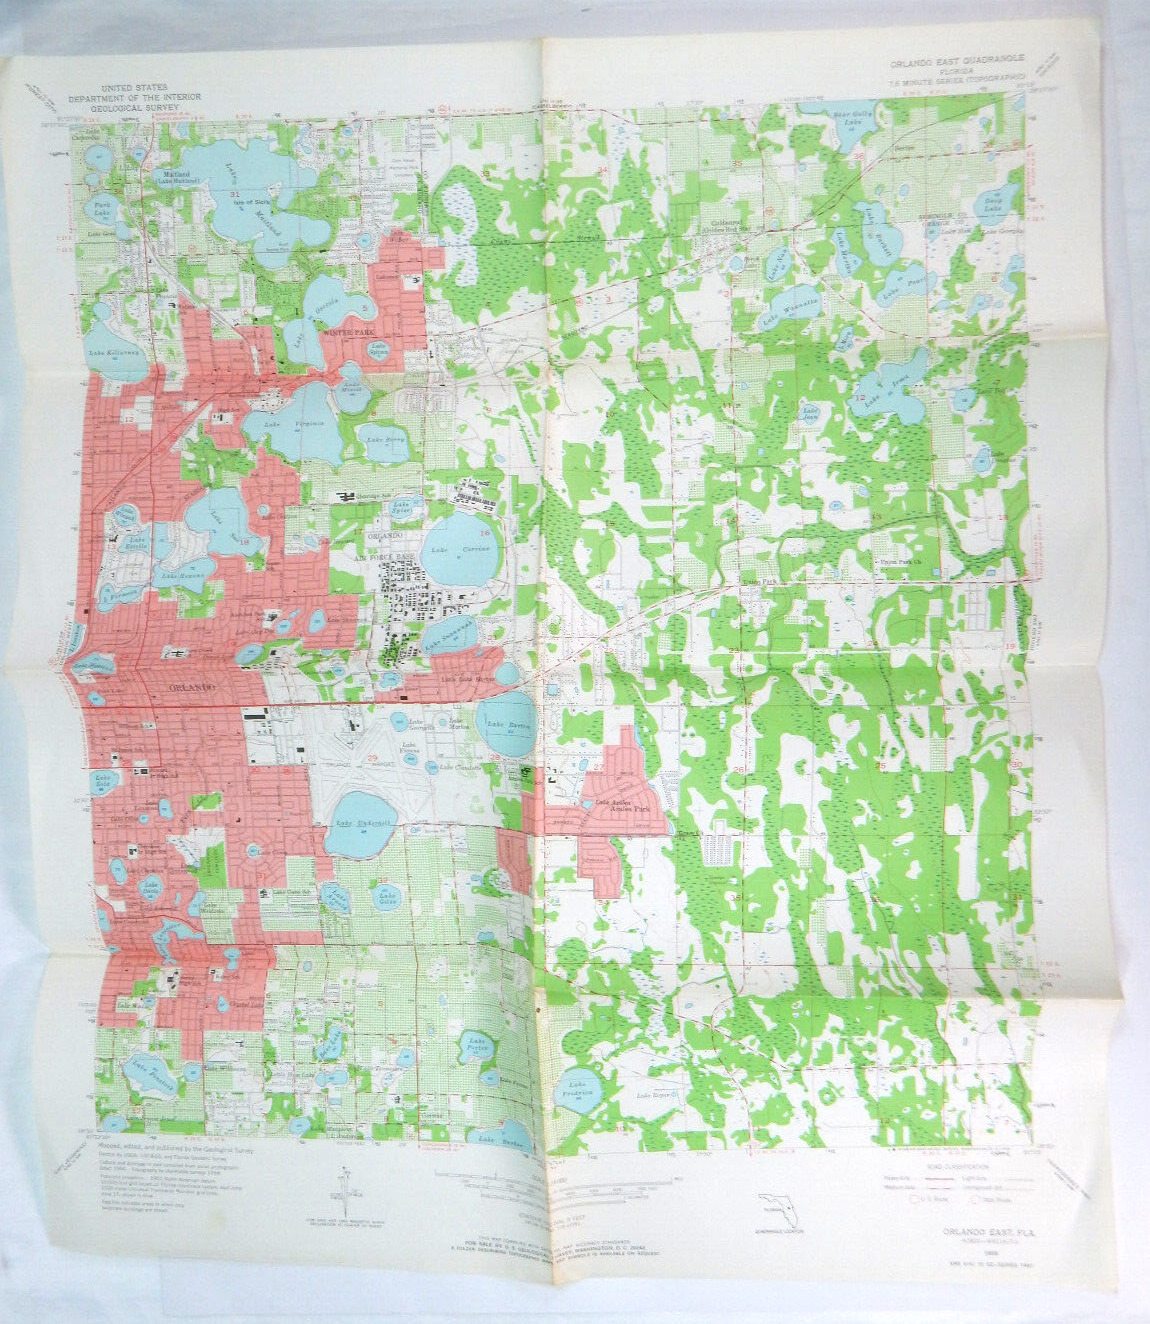 ORLANDO EAST FLORIDA QUADRANGLE 7.5 MINUTE SERIES MAP TOPOGRAPHICAL 1956 USGS